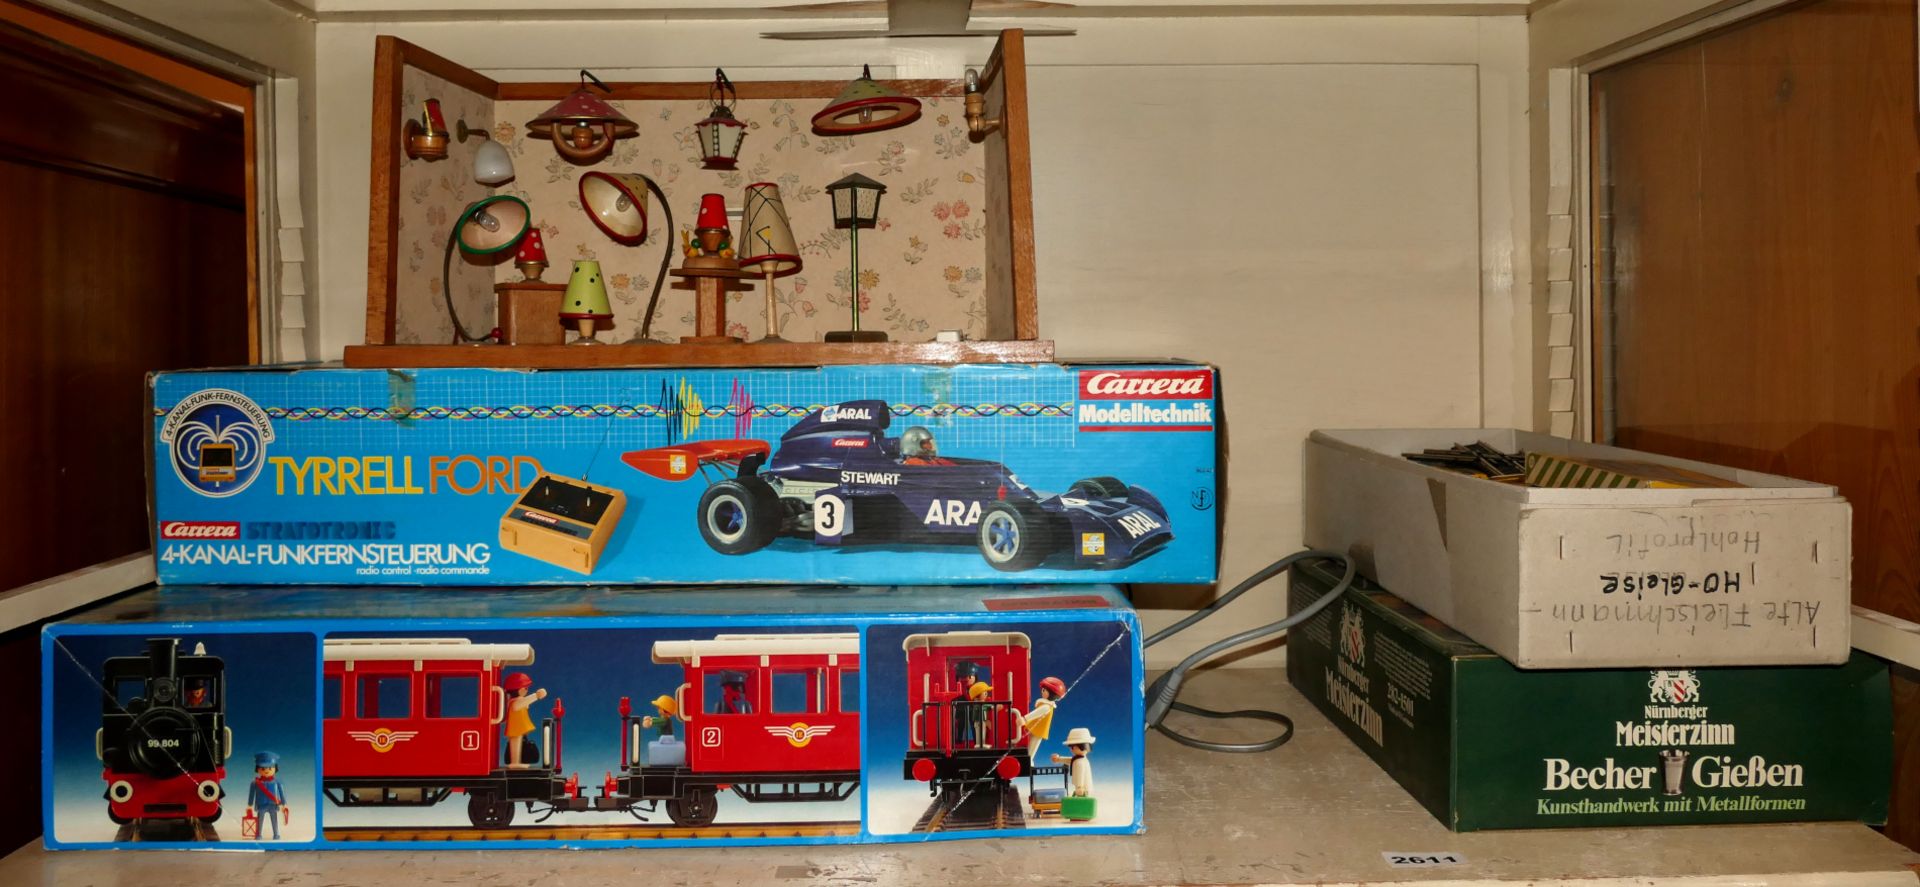 1 Konv. Spielzeug: 1 Fernlenkauto CARRERA "Tyrrell Ford", 1 Teil eines Sets PLAYMOBIL "4001", Schien